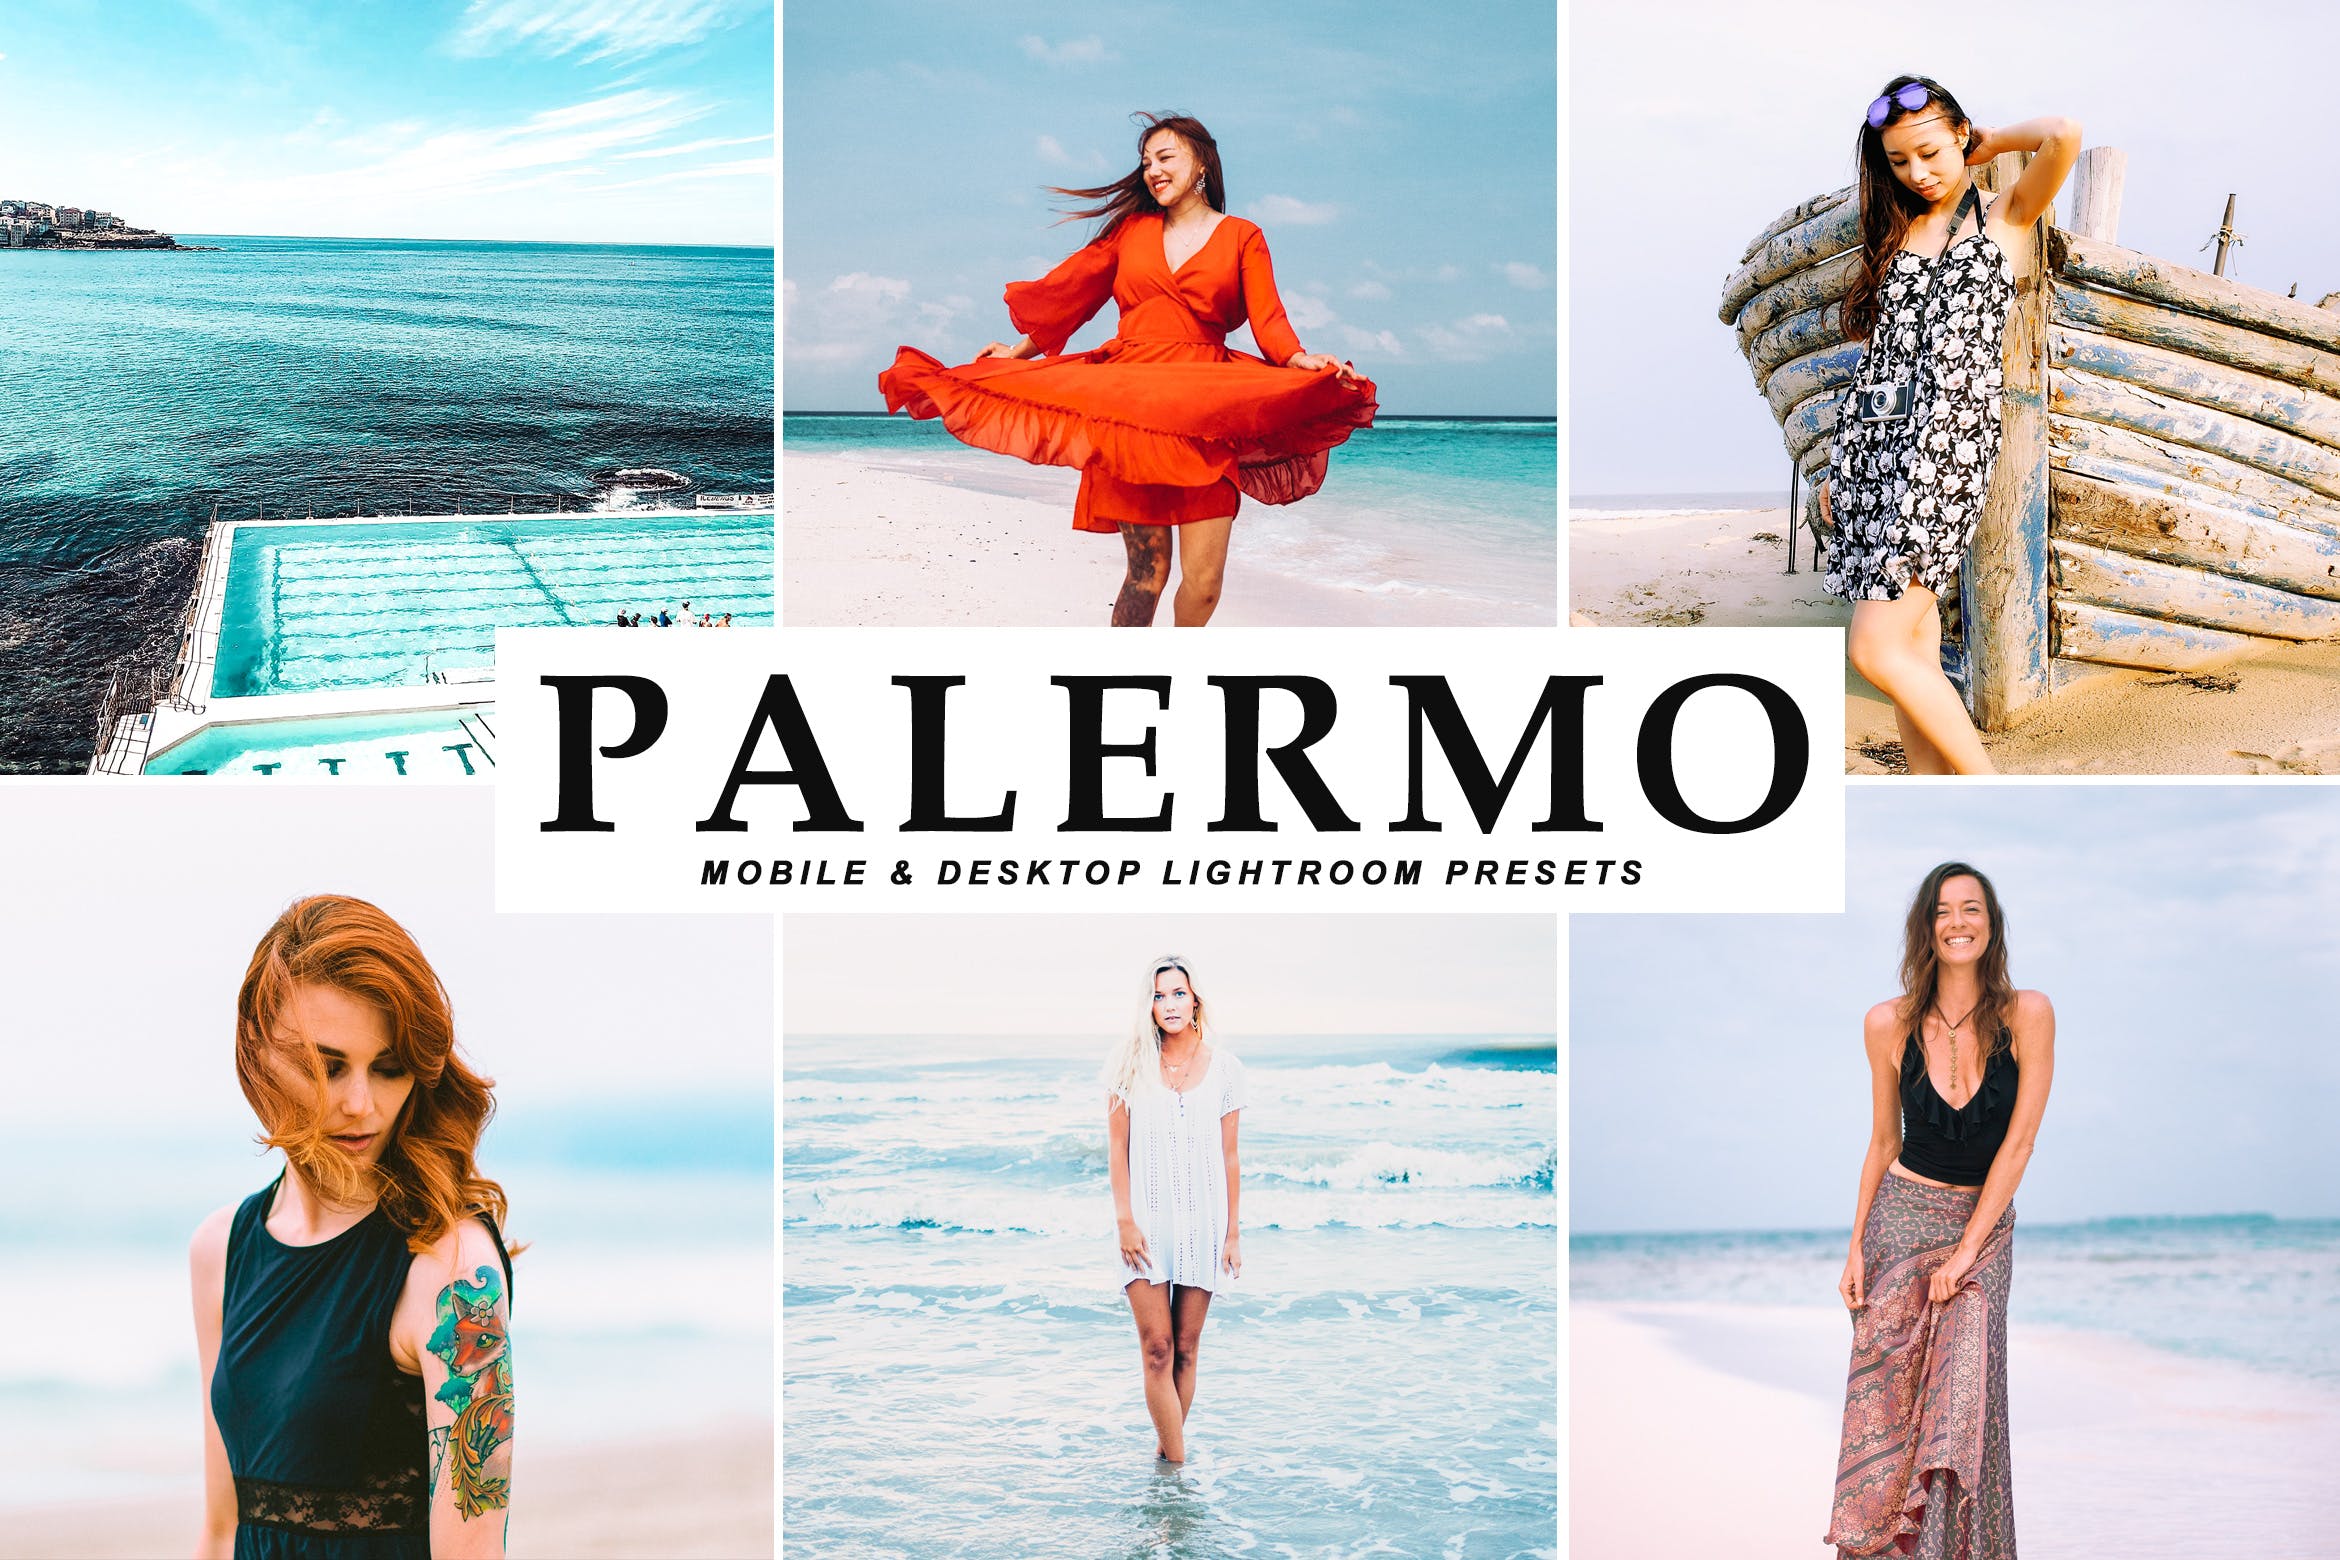 沙滩海岛阳光照片调色滤镜蚂蚁素材精选LR预设 Palermo Mobile & Desktop Lightroom Presets插图